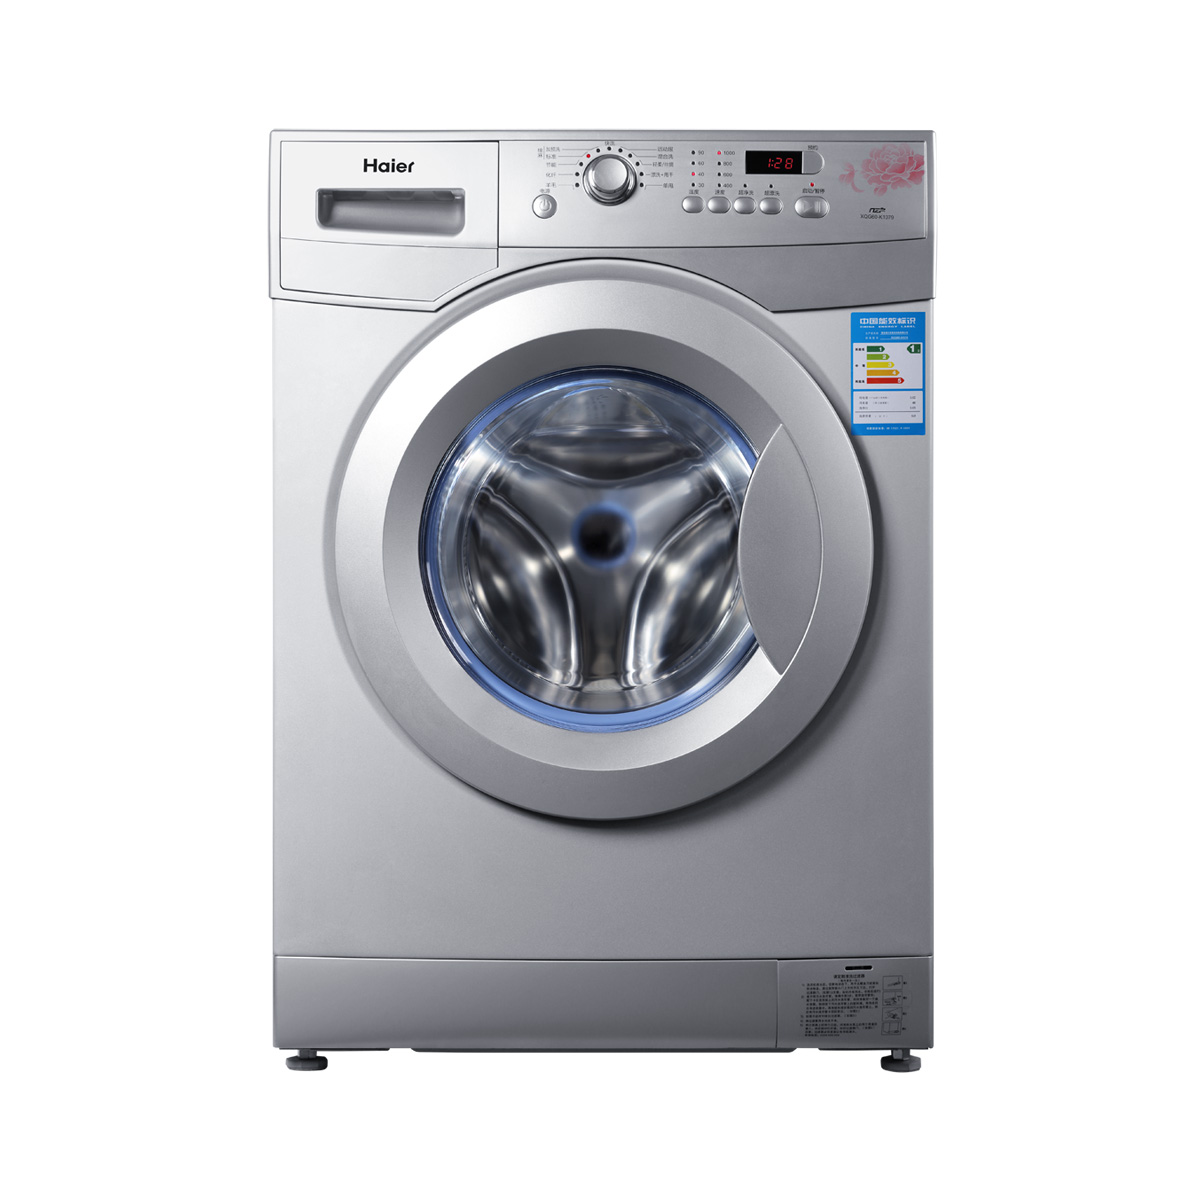 海尔Haier洗衣机 XQG60-K1079 说明书